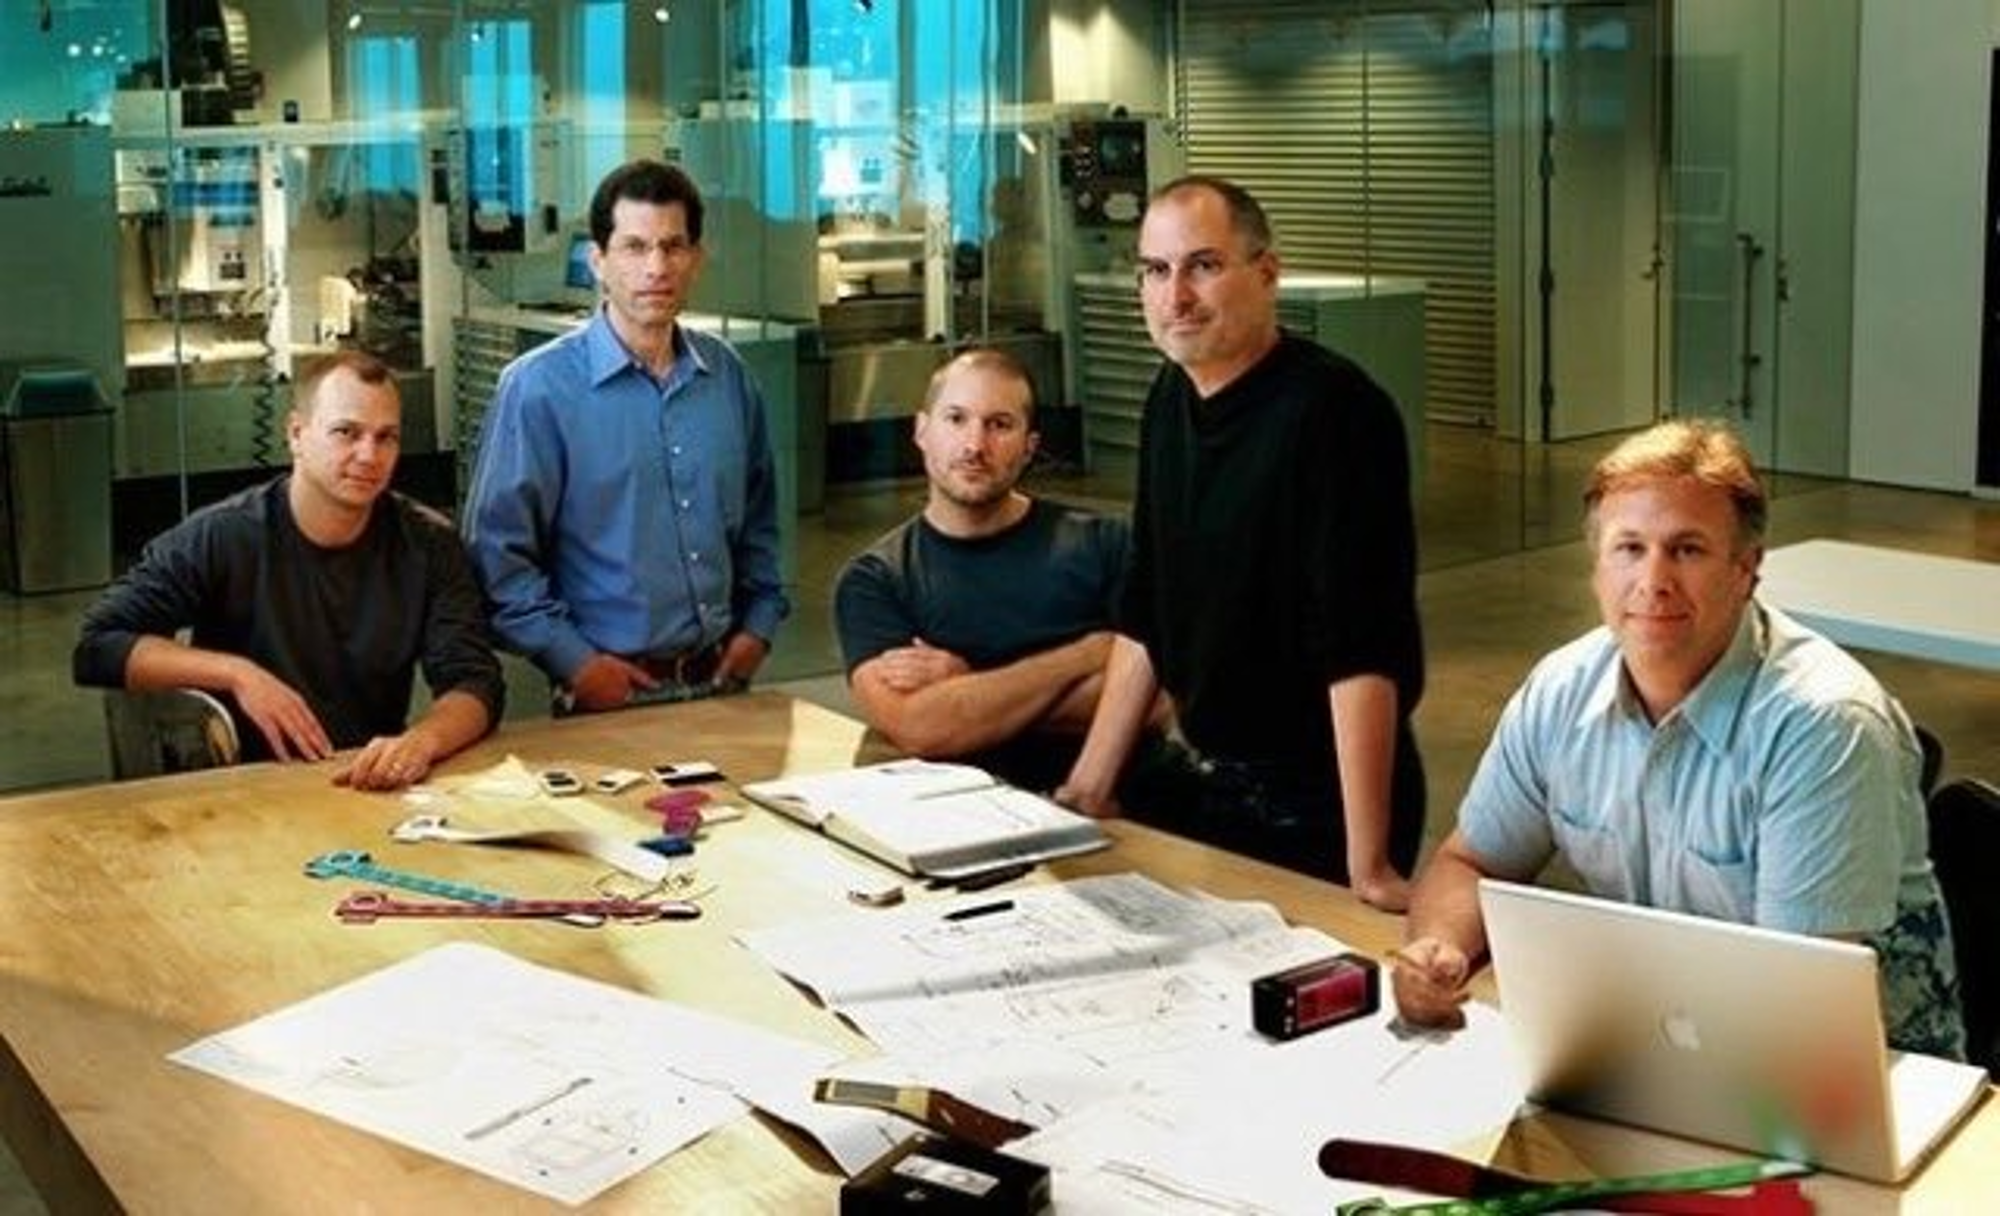 从左到右：Tony Fadell（iPod 之父、前苹果研发副总裁）、Jonathan Rubinstein（前苹果资深副总裁）、Jony Ive（前苹果设计副总裁）、Steve Jobs（前苹果 CEO）、Philip  Schiller（苹果营销资深副总裁）